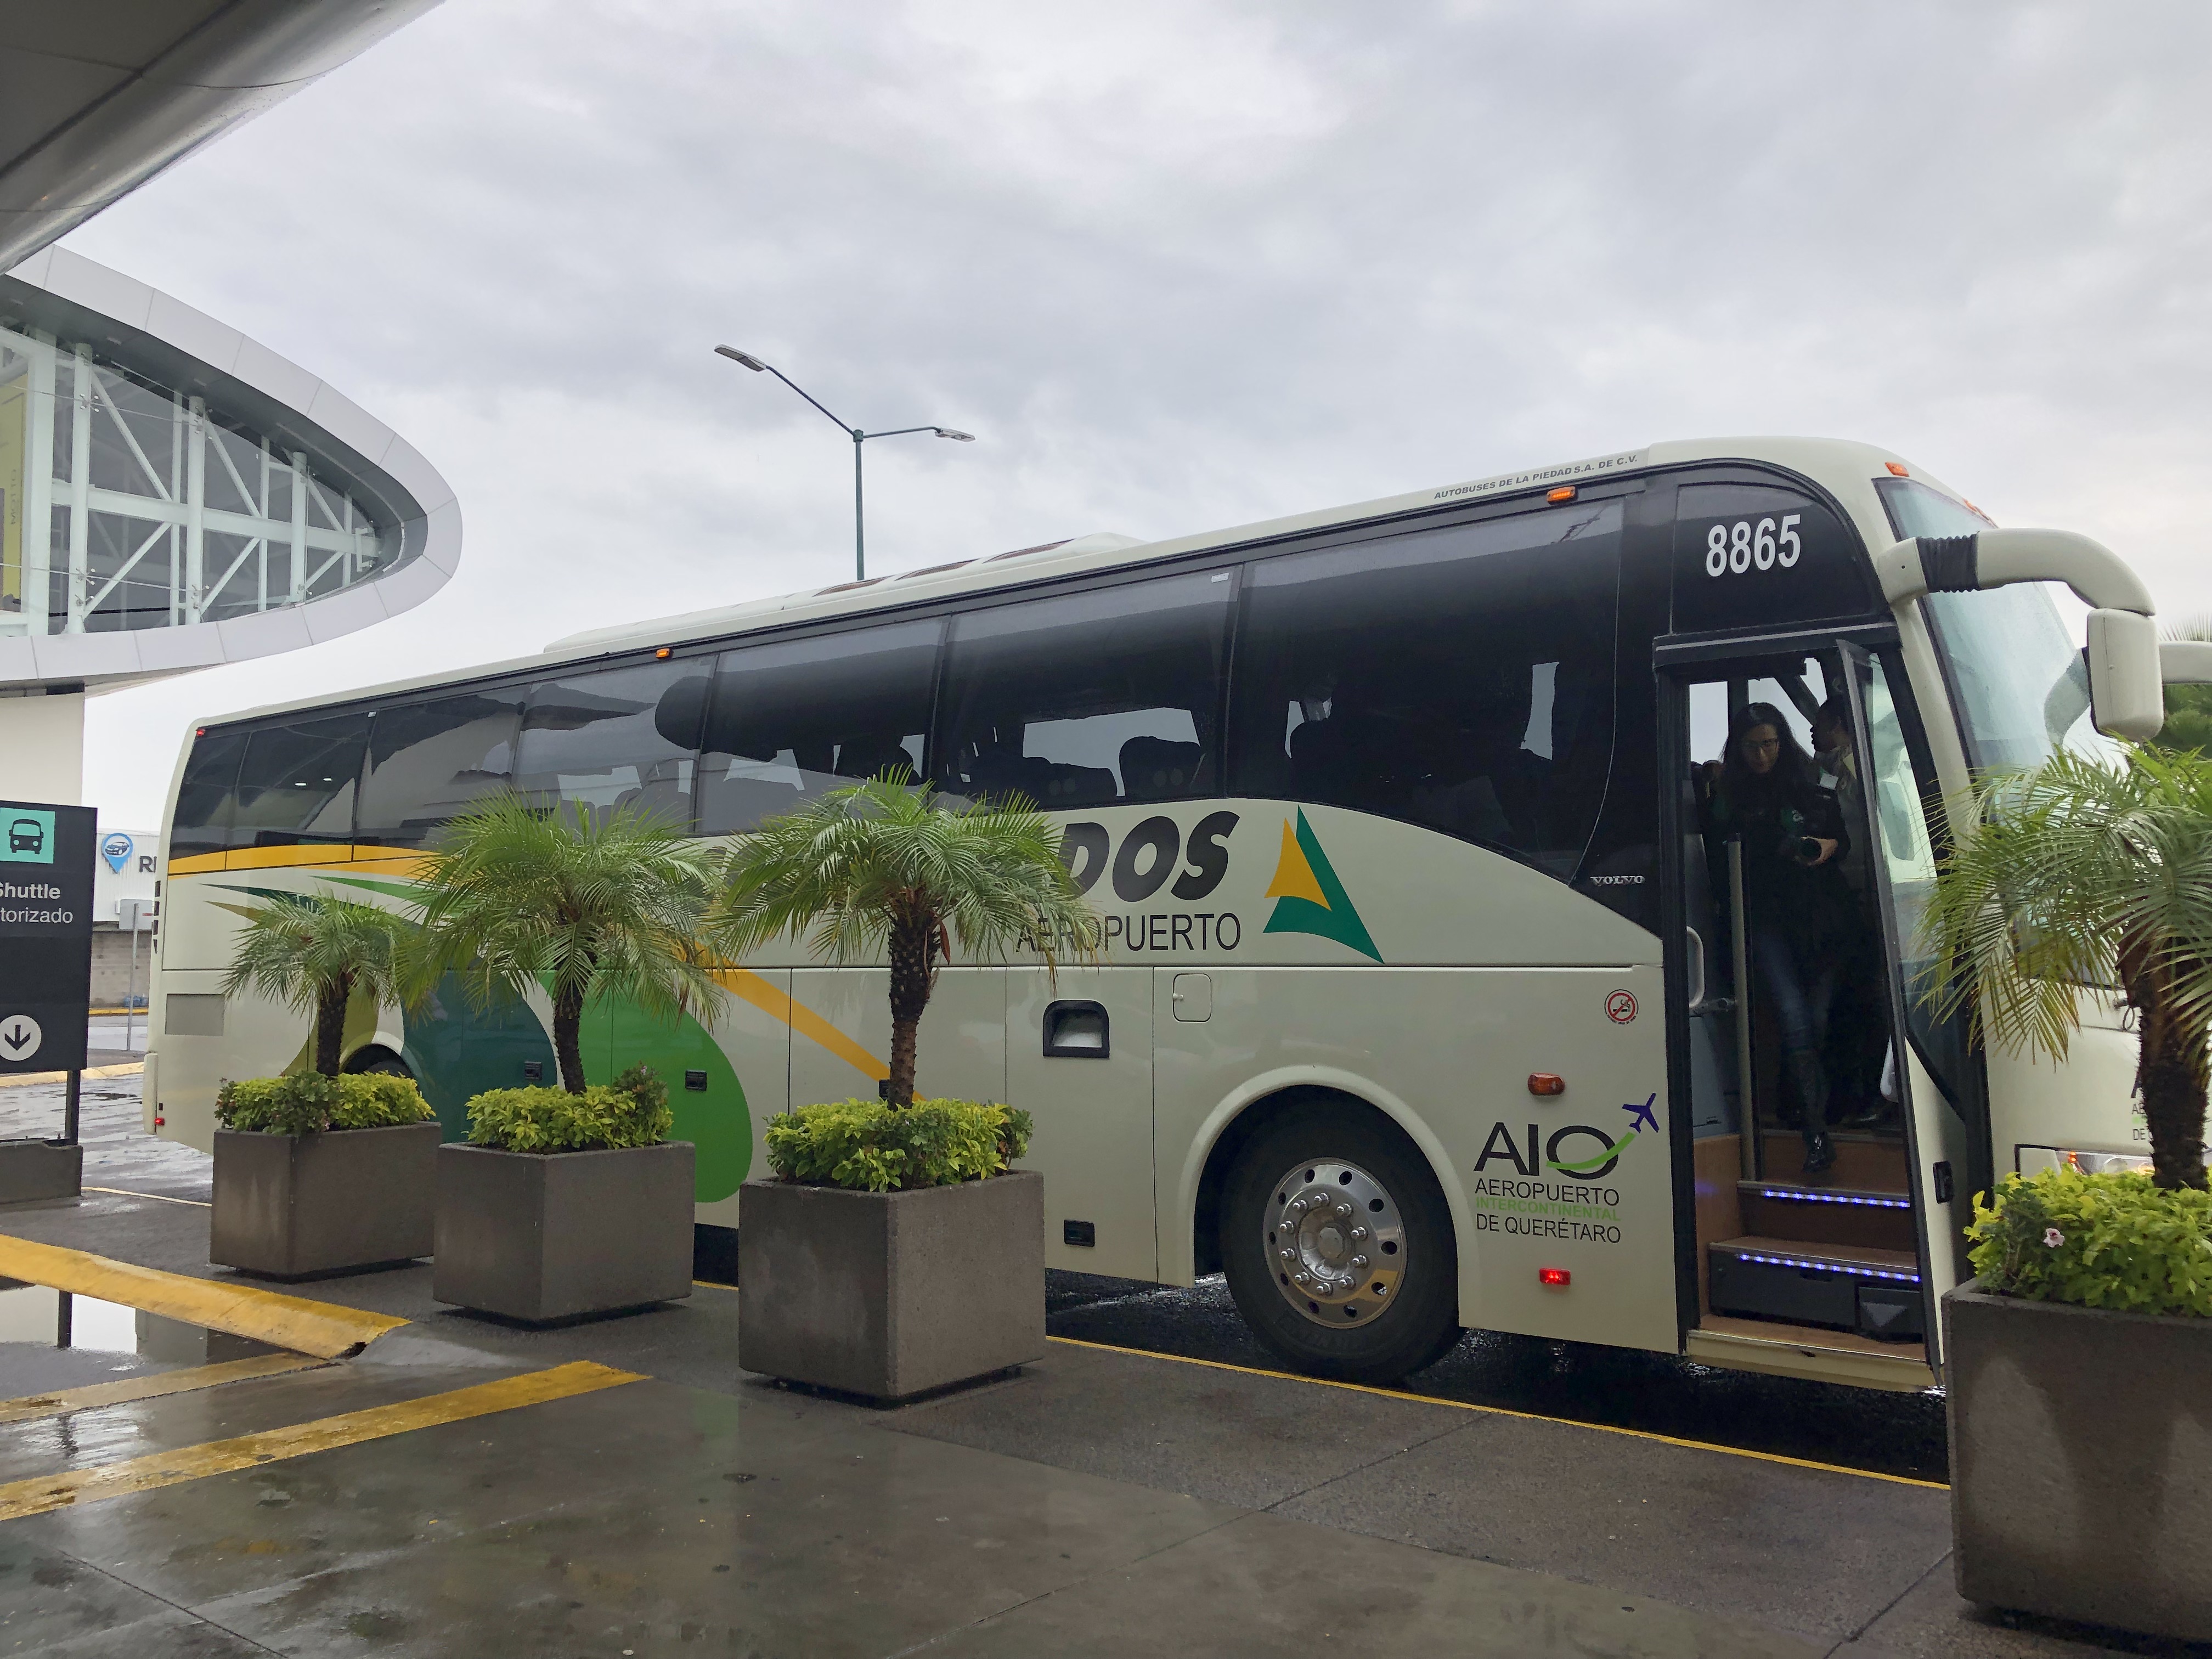  Terminal de autobuses en AIQ ha tenido buena respuesta: Sedesu